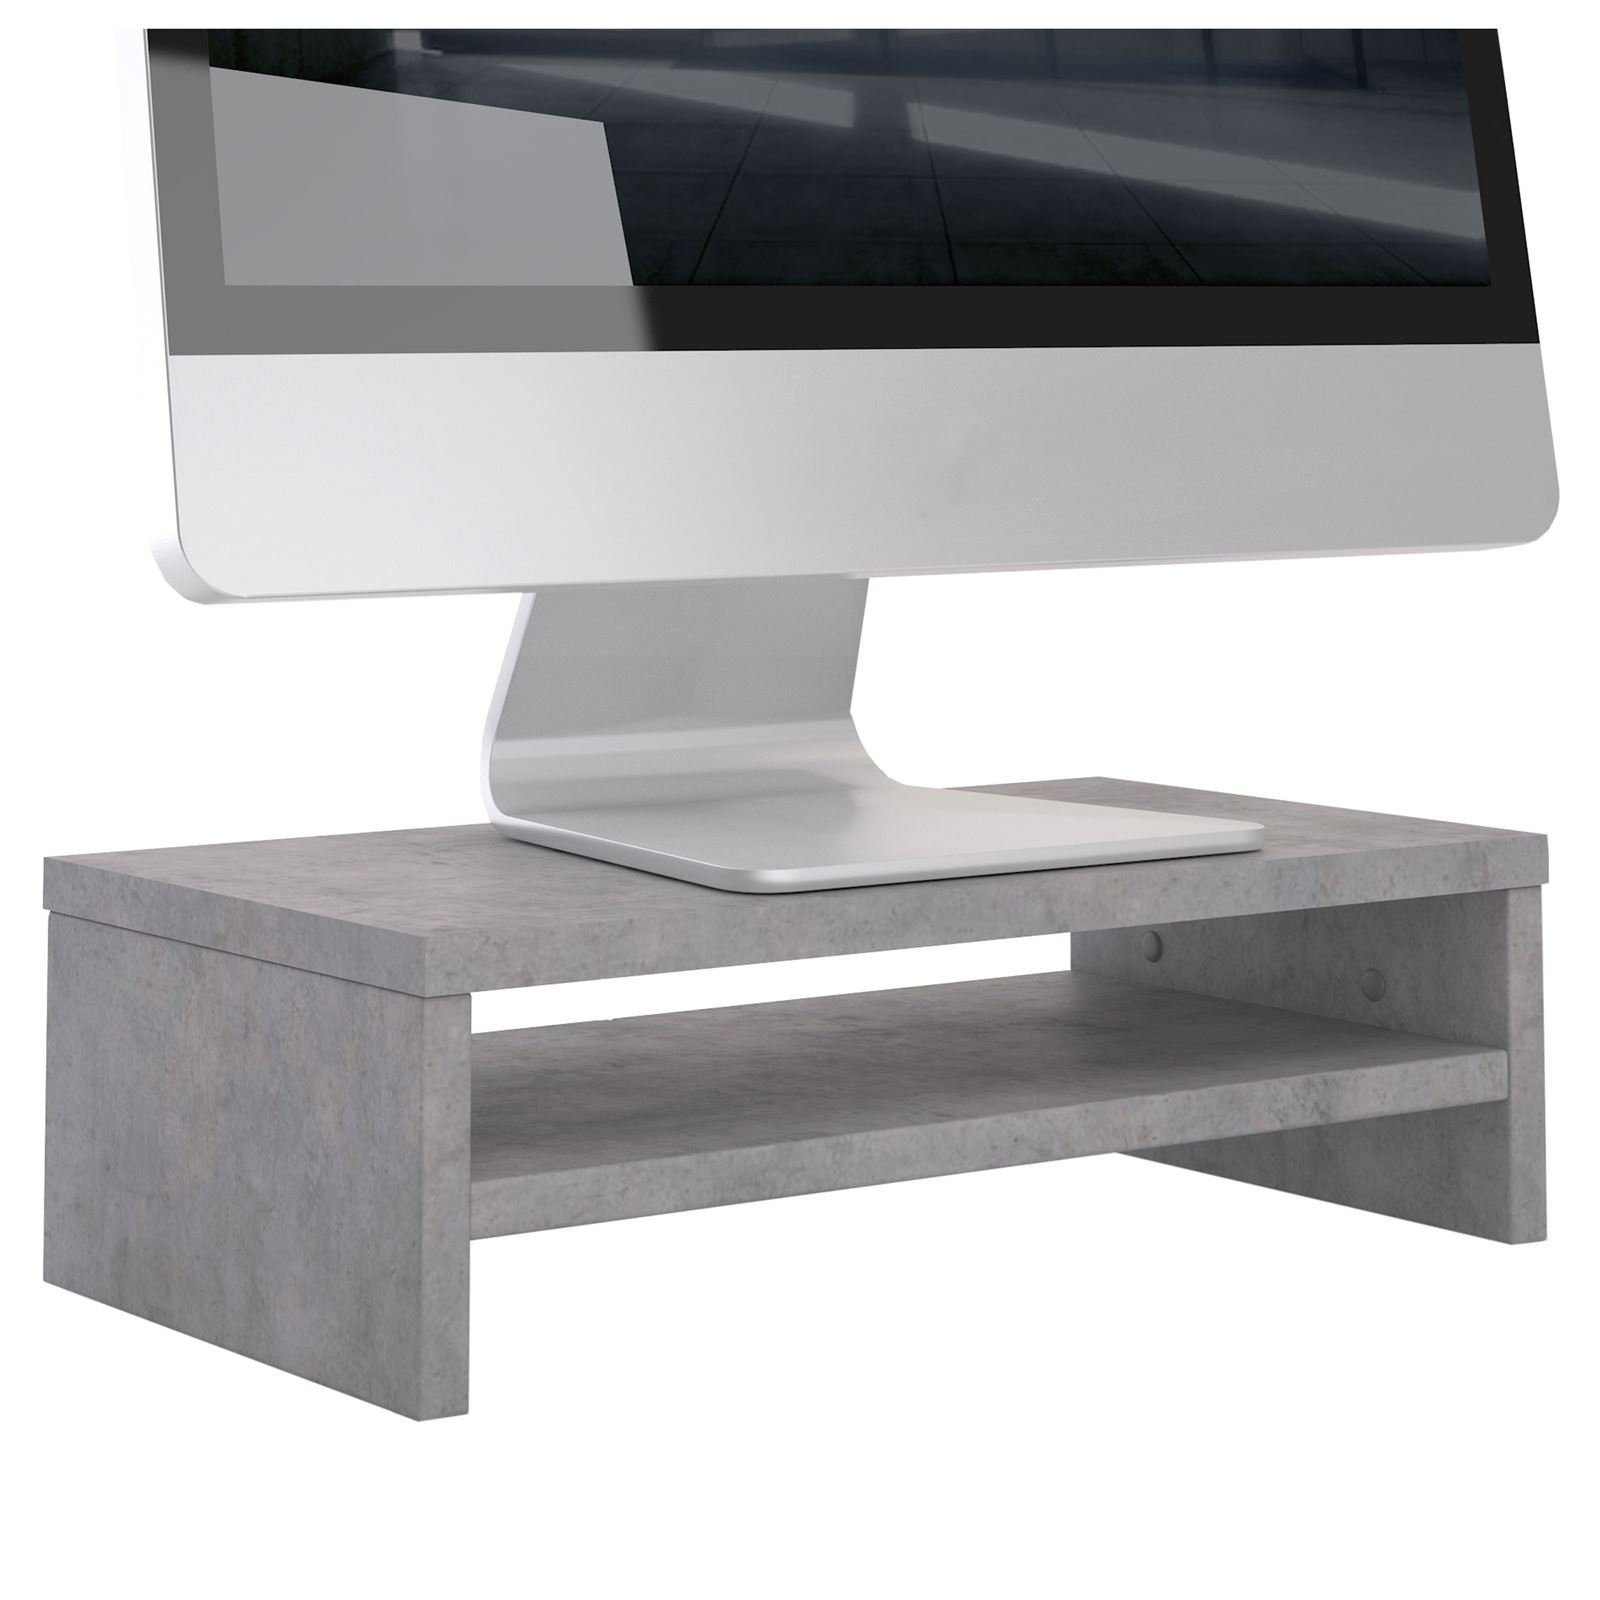 CARO-Möbel Schreibtischaufsatz SUBIDA, Bildschirmaufsatz Monitorständer Monitorerhöhung inkl. Ablagefach Be